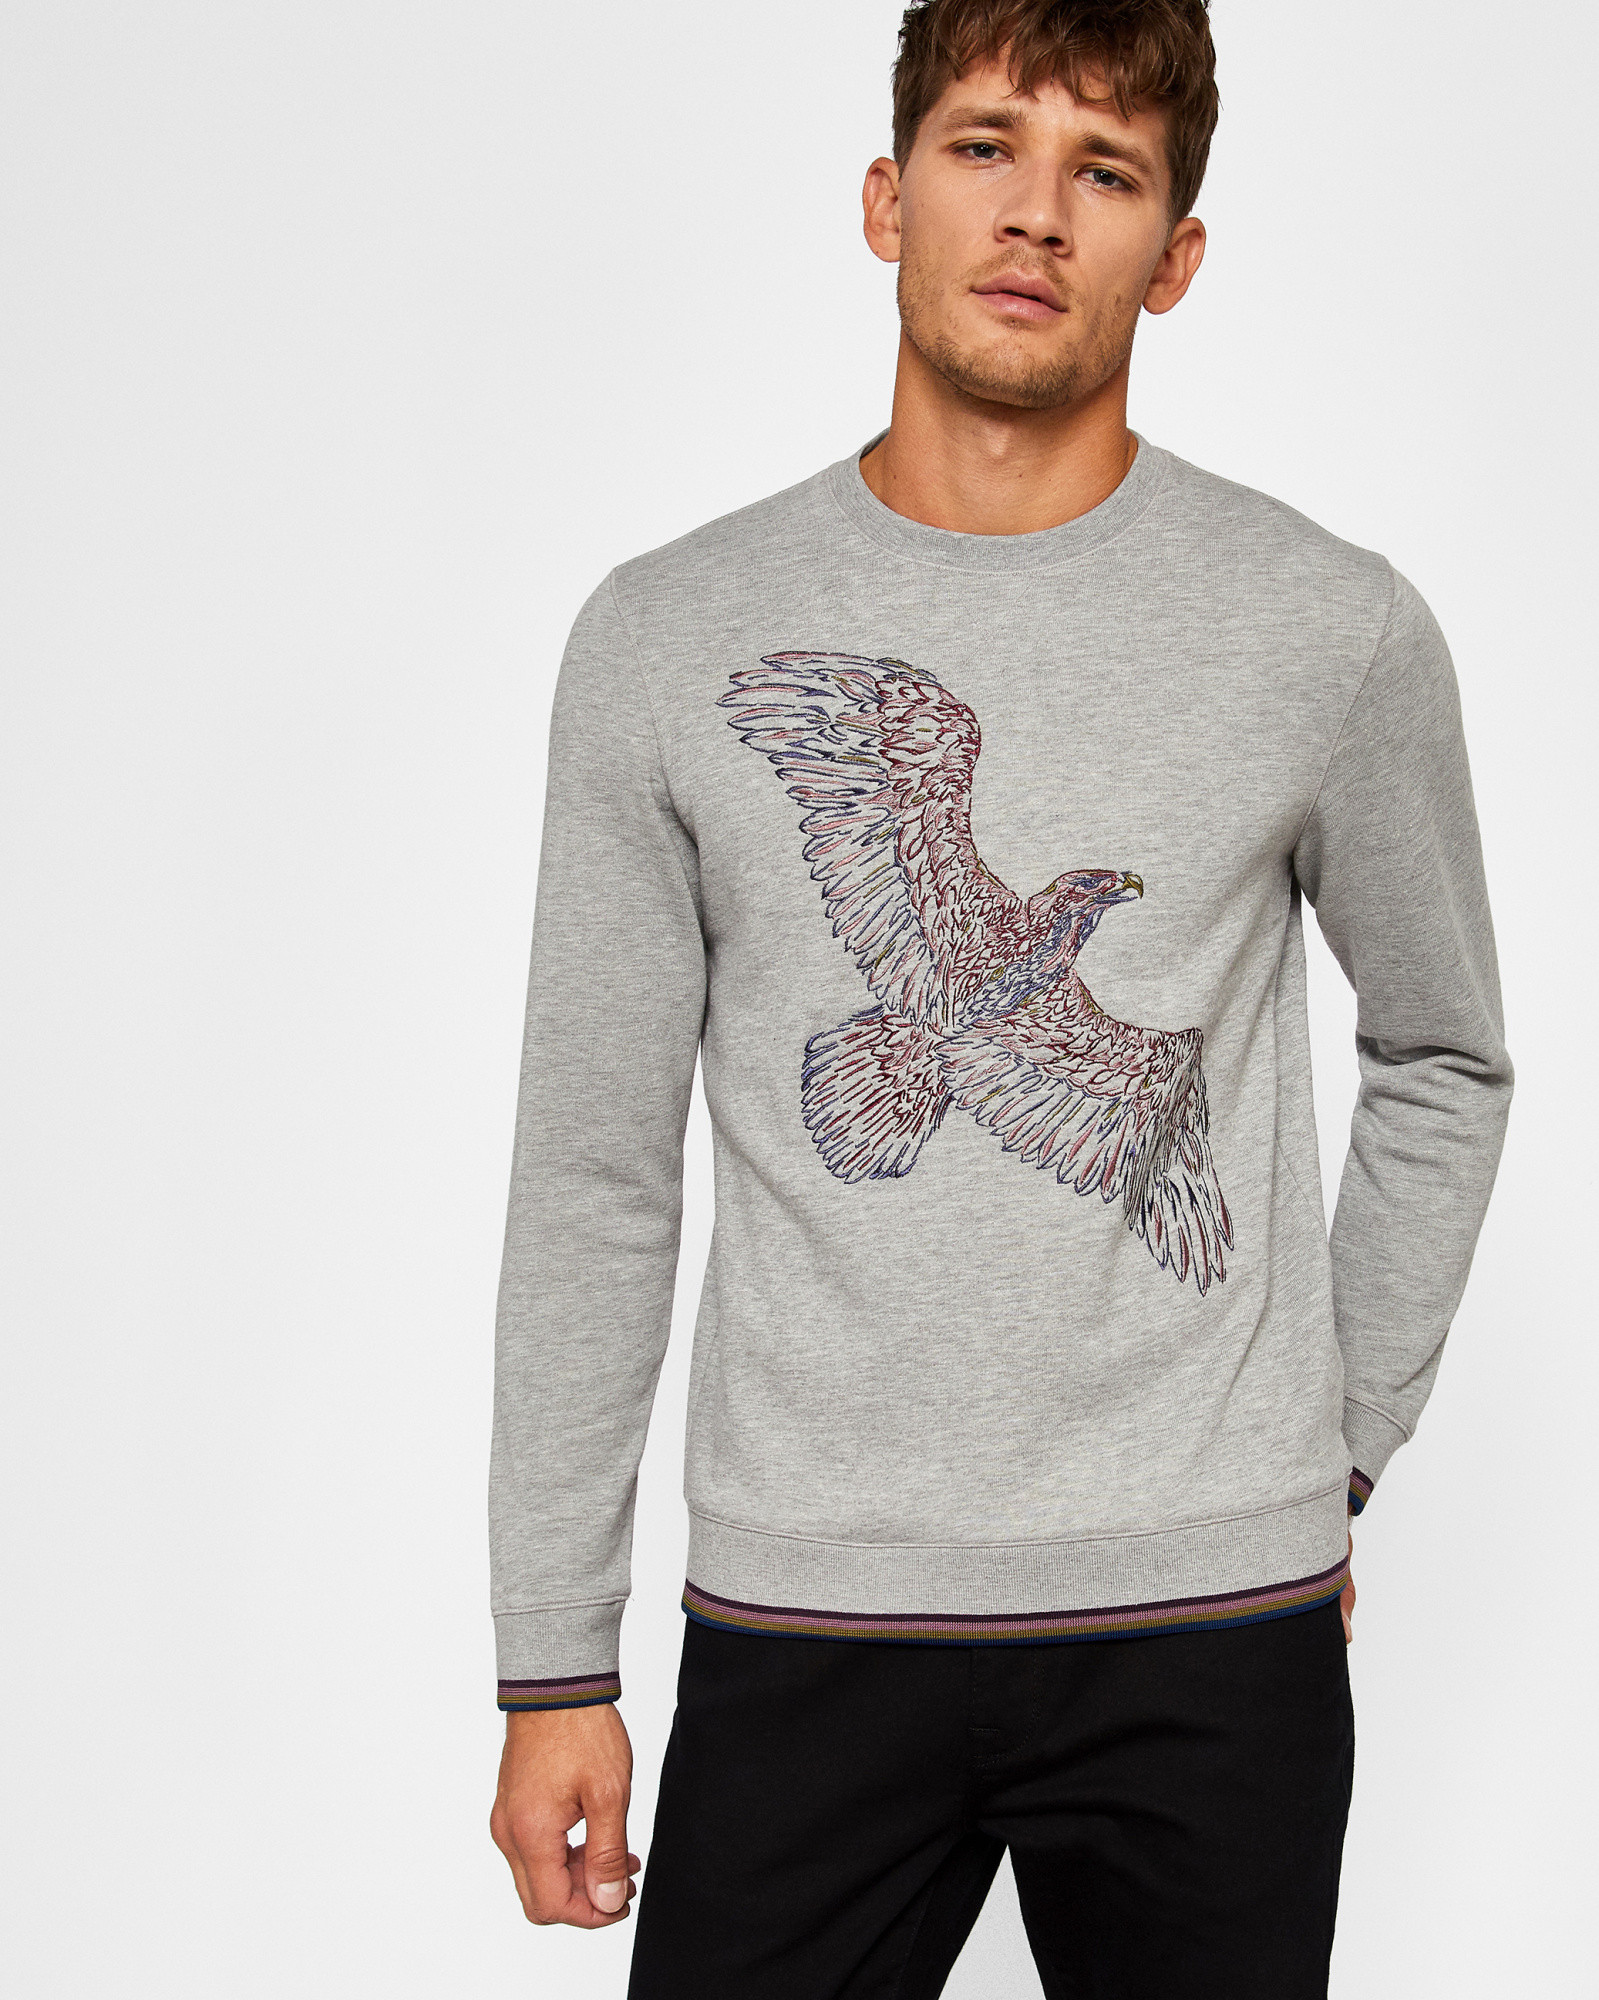 EAAGLE Bird motif cotton sweatshirt